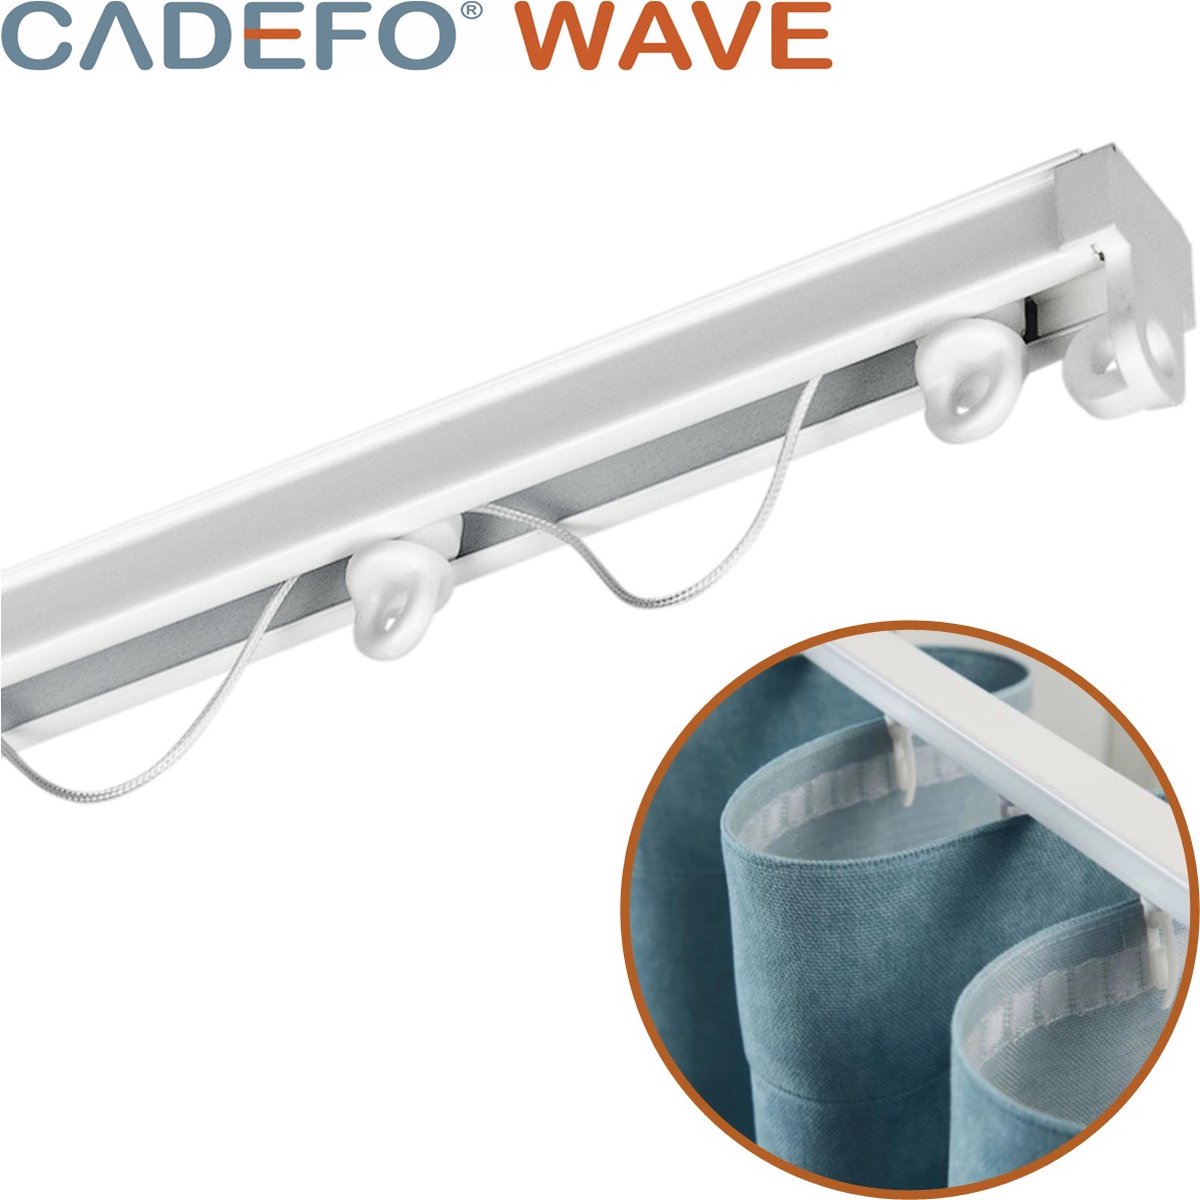 CADEFO WAVE (351 - 400 cm) Gordijnrails - Compleet op maat! - UIT 1 STUK - Leverbaar tot 6 meter - Plafondbevestiging - Lengte 375 cm